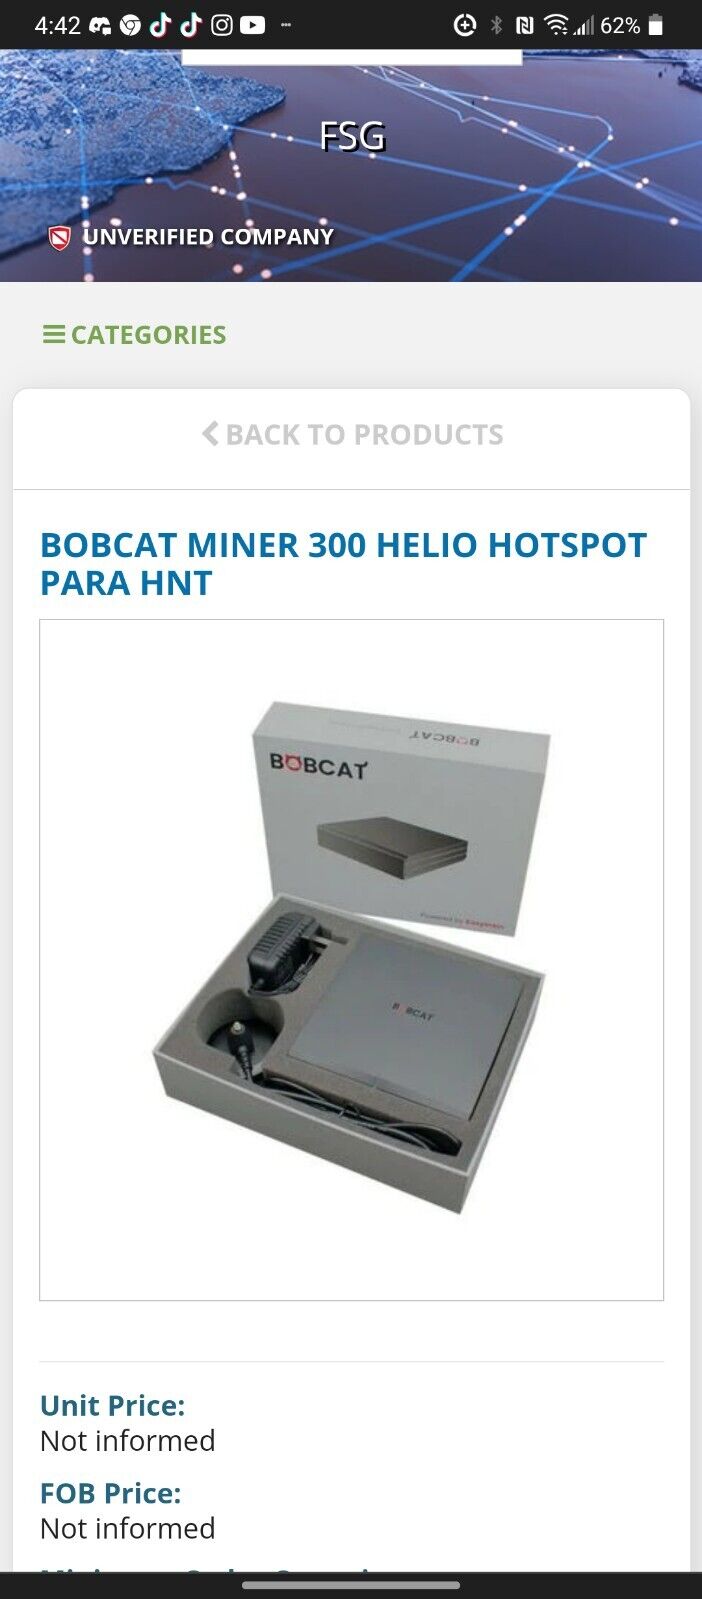 Bobcat Miner 300 Helium Hotspot for HNT - US915 - NEW - Ships Immediately - 